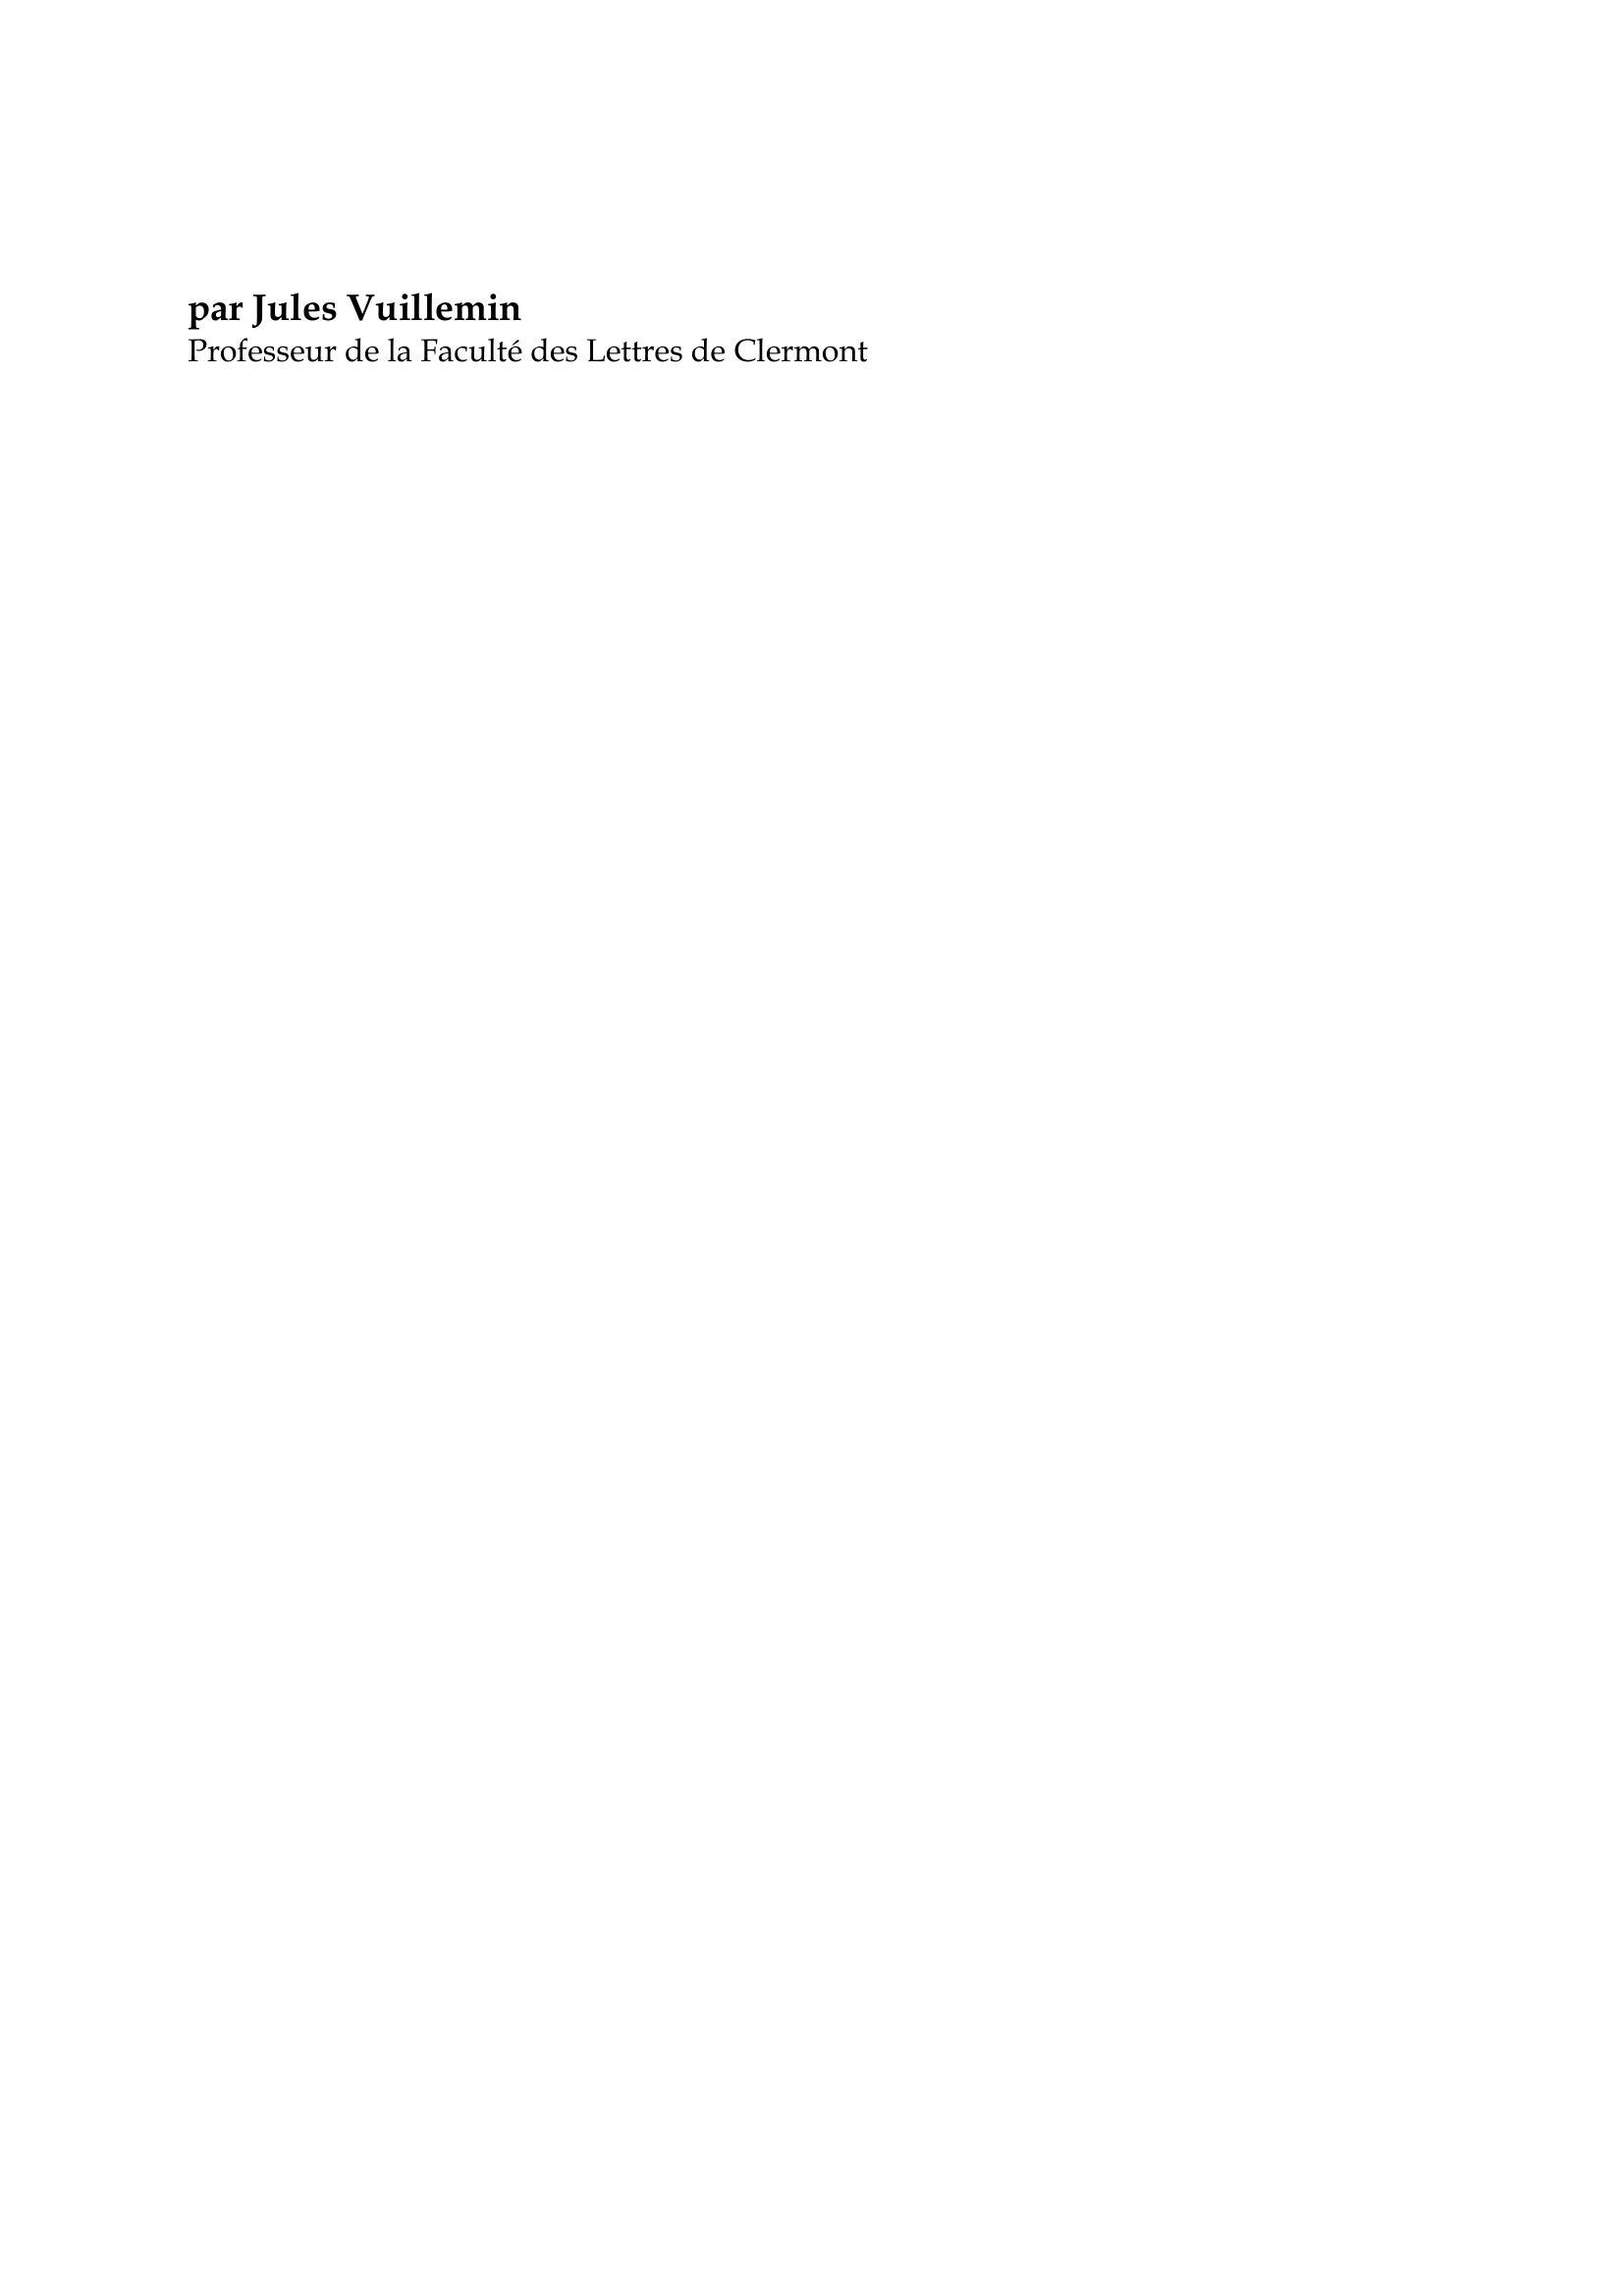 Prévisualisation du document Friedrich von Schelling

par Jules Vuillemin
Professeur de la Faculté des Lettres de Clermont

Friedrich von Schelling naquit en 1775 à Leonberg en Wurtemberg.